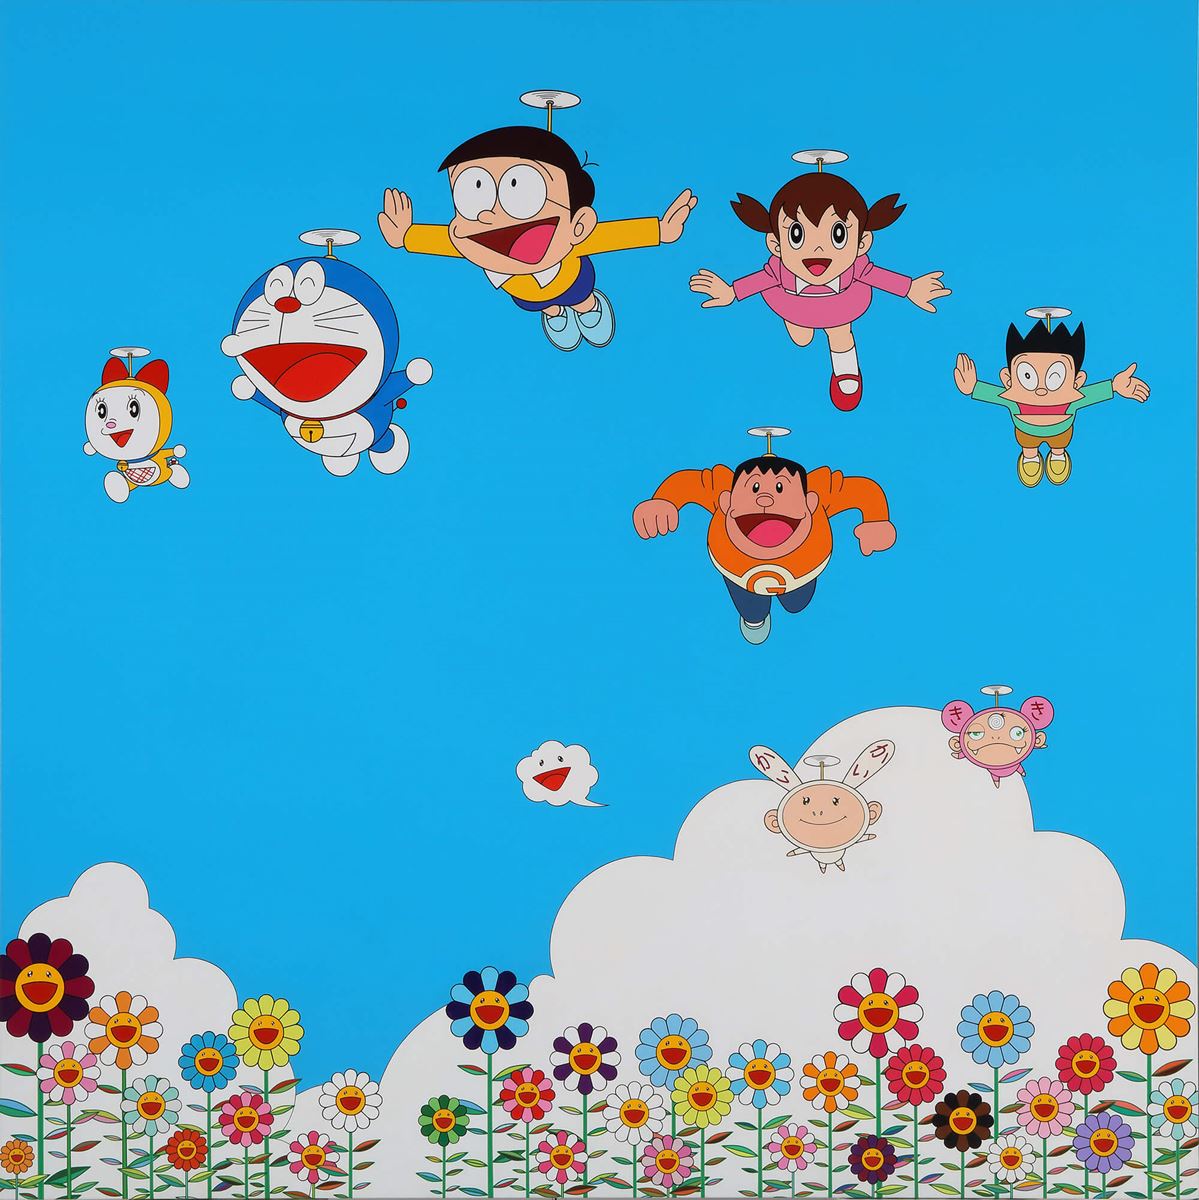 村上隆《ぼくと弟とドラえもんとの夏休み》2002　キャンバス、アクリル　1800x1805 mm ©︎2002 Takashi Murakami/Kaikai Kiki Co., Ltd. All Rights Reserved. ©️Fujiko-Pro.